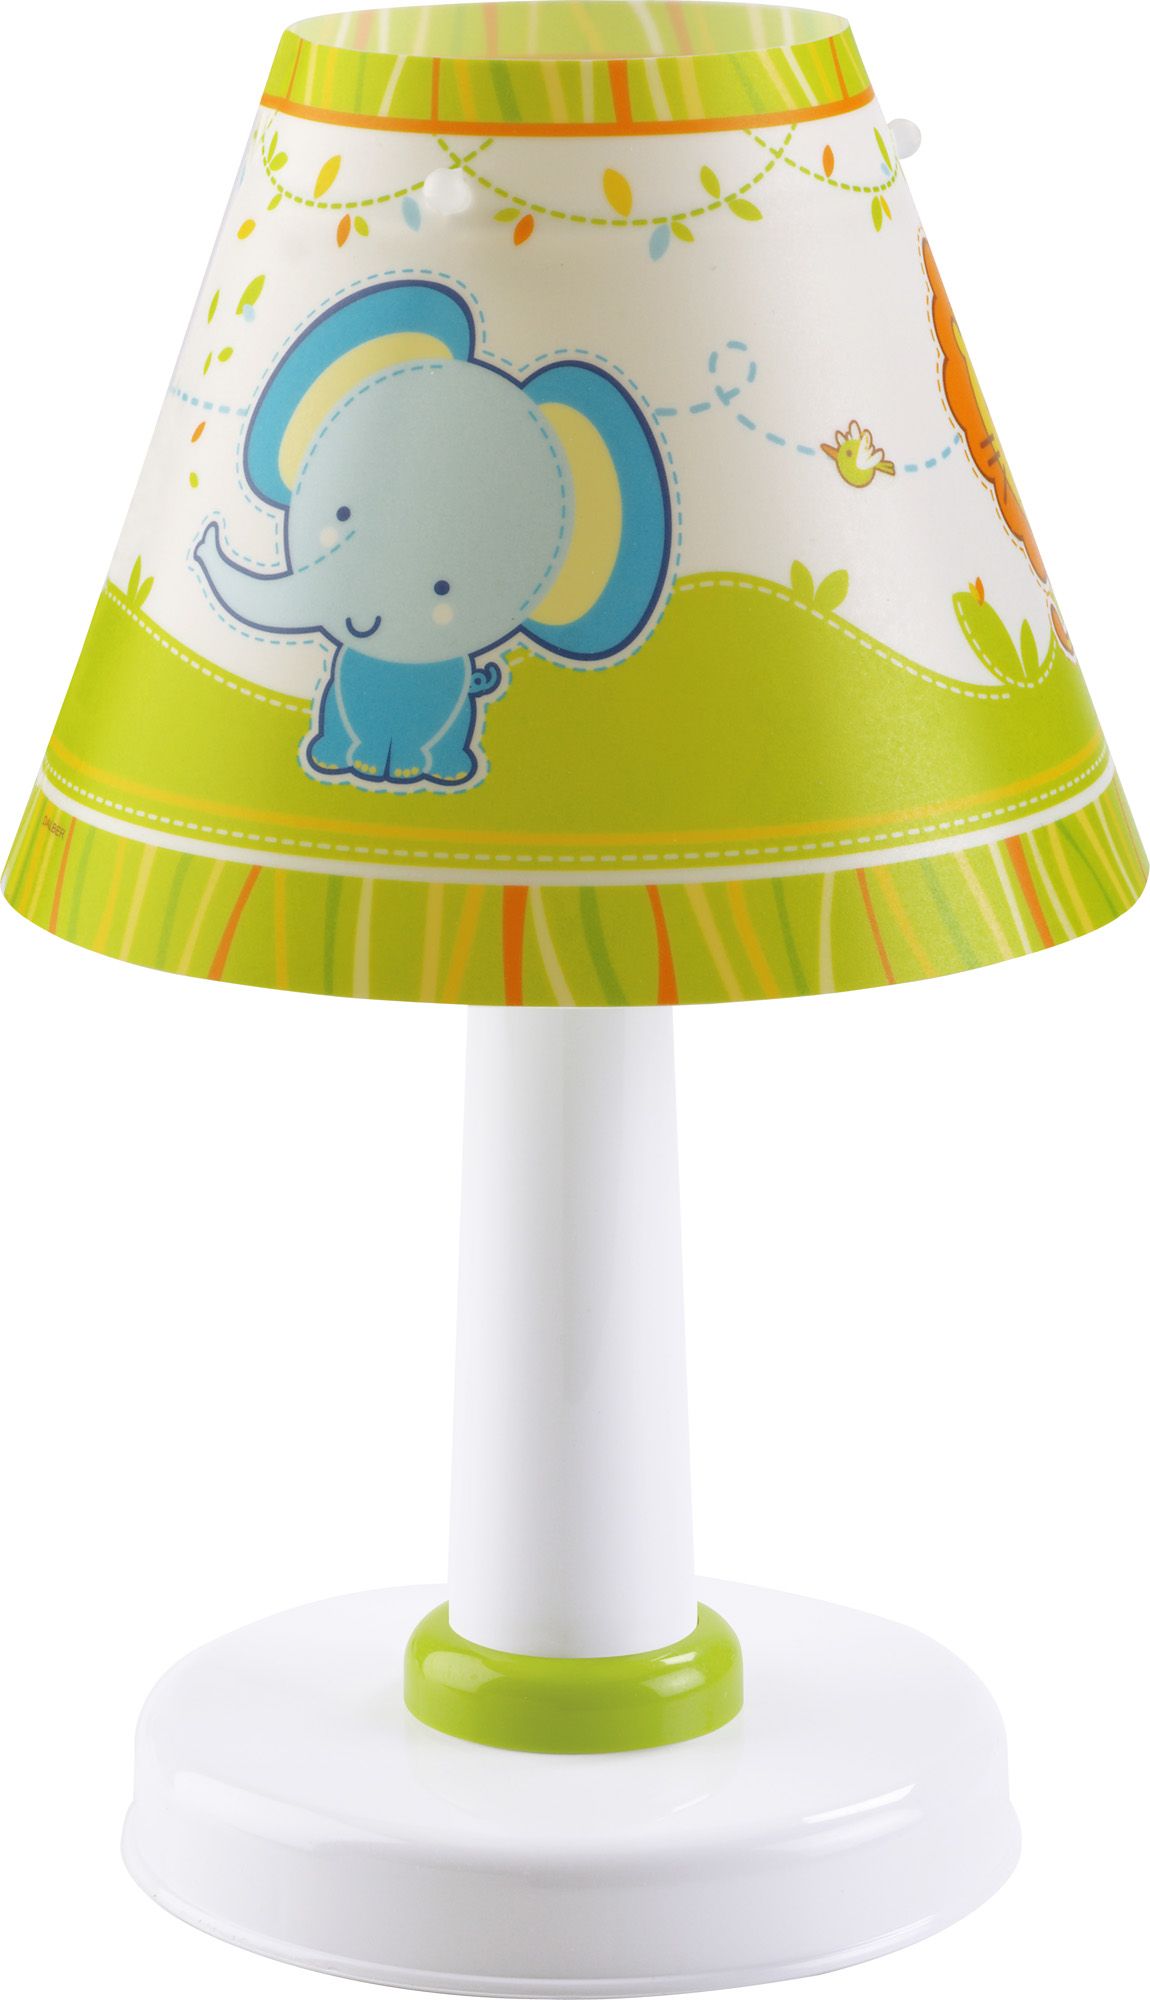 Dalber Little Zoo 21111 dětská stolní lampa - obrázek 1